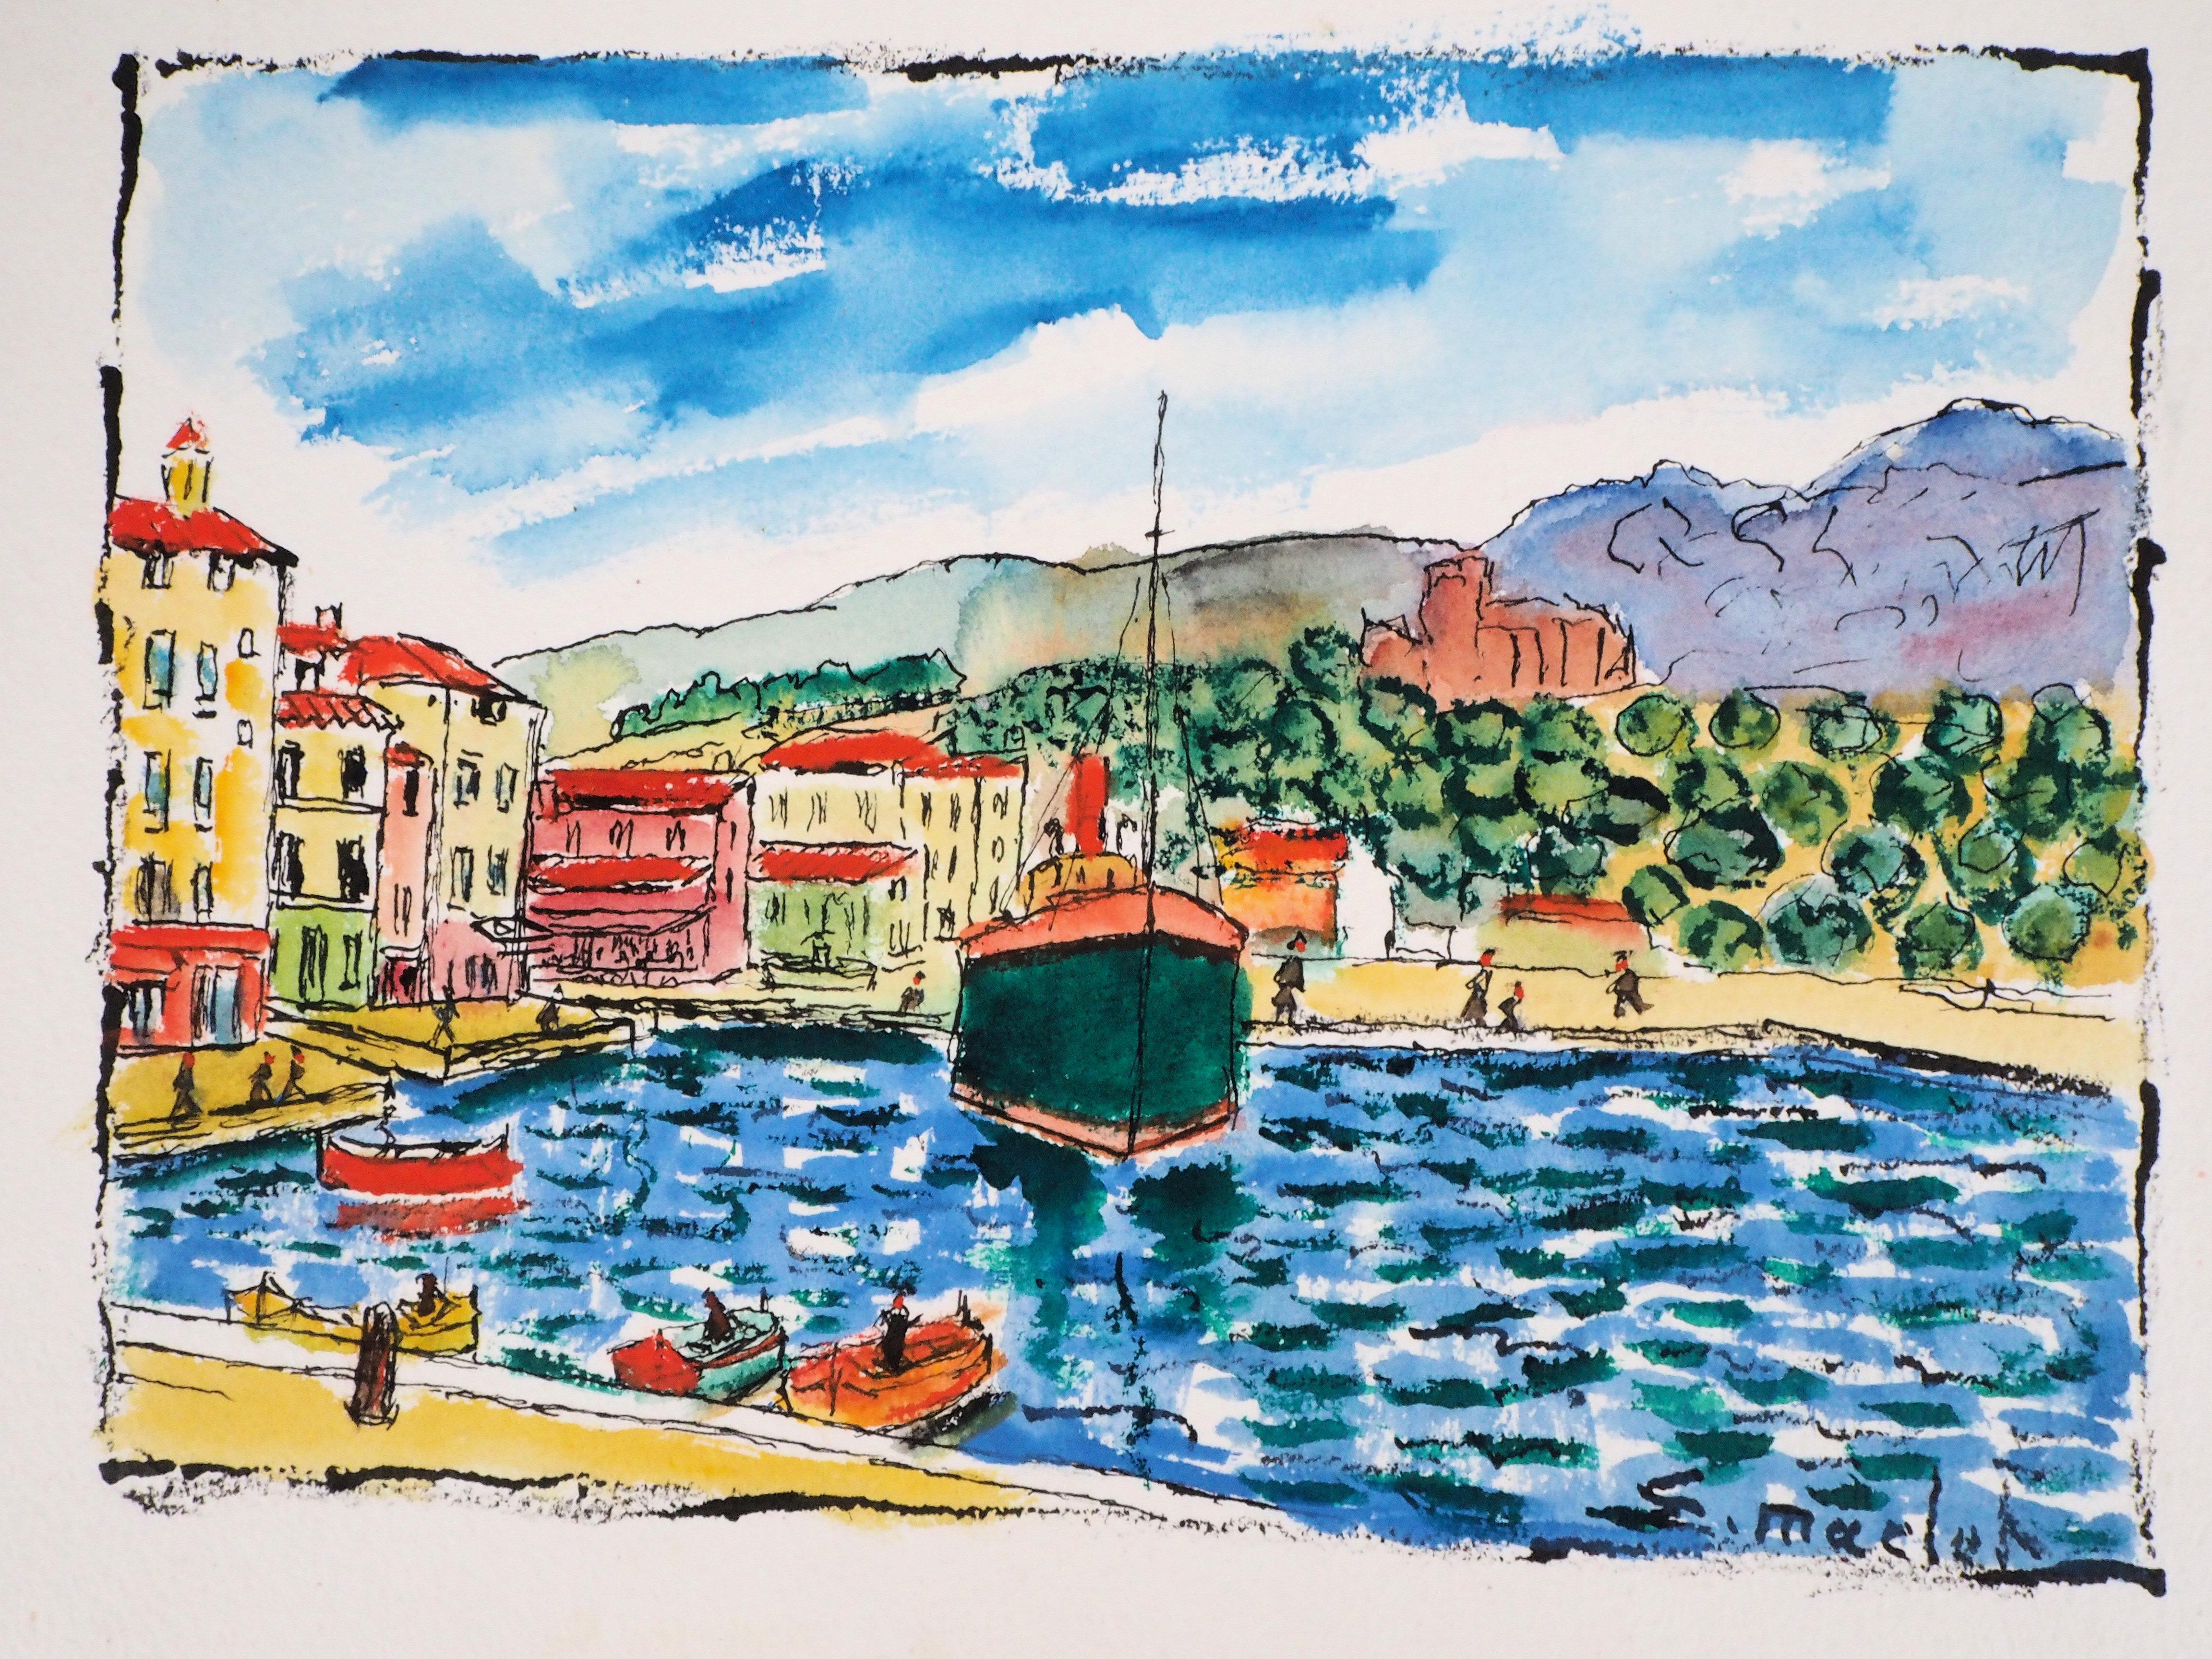 South of France : Harbor of Cassis (Marseille) - Aquarelle originale, signée à la main - Moderne Art par Elisée Maclet